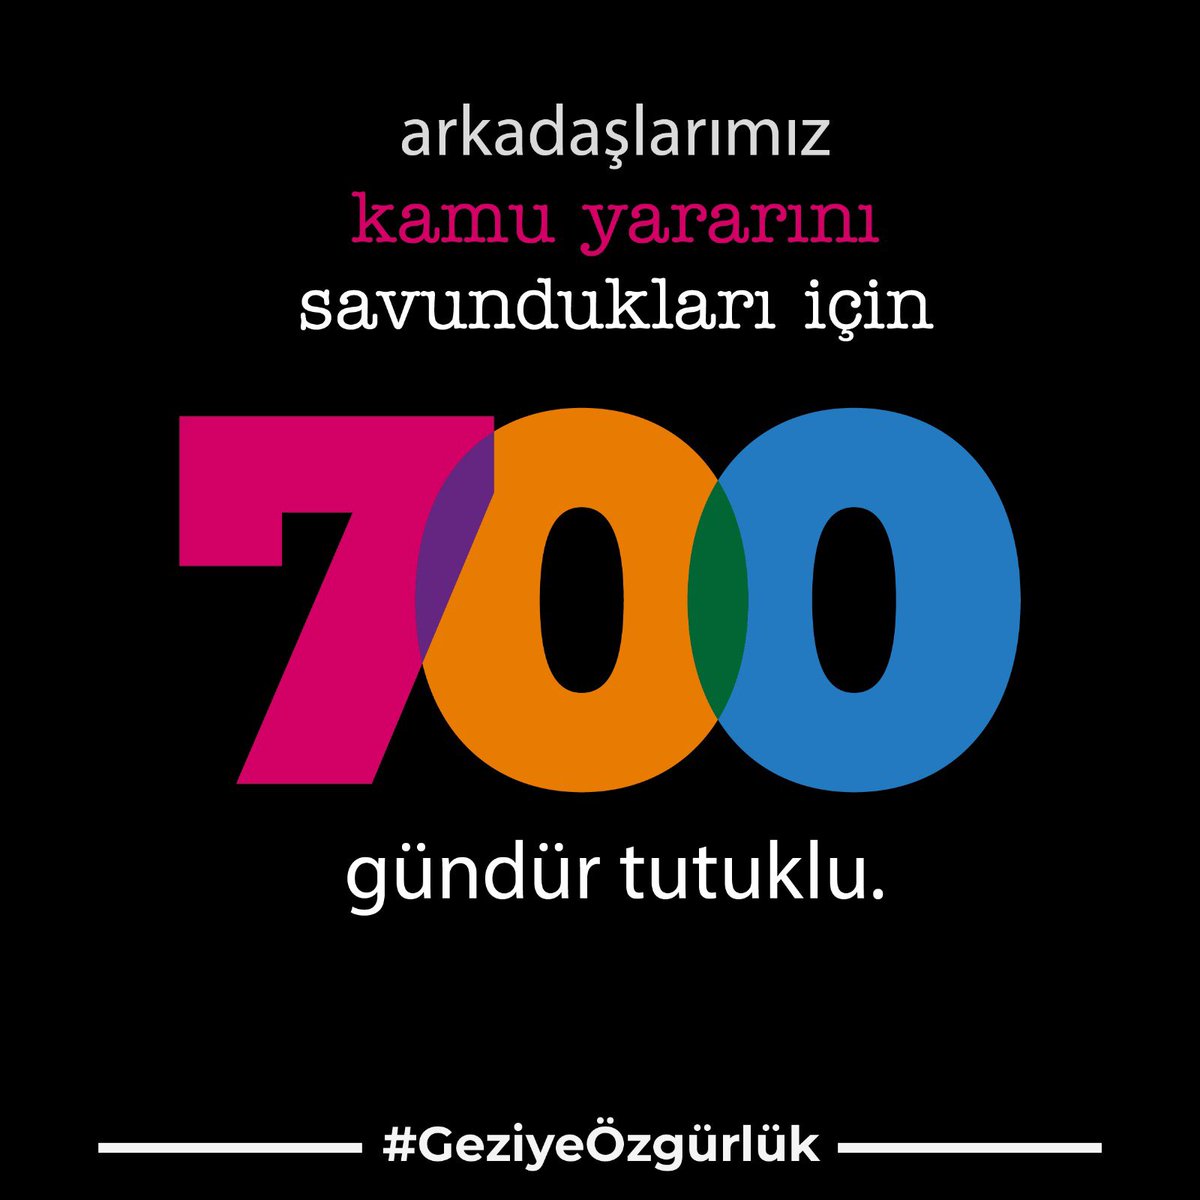 Arkadaşlarımız kamu yararını savundukları için 700 gündür tutuklu! #GeziyeÖzgürlük